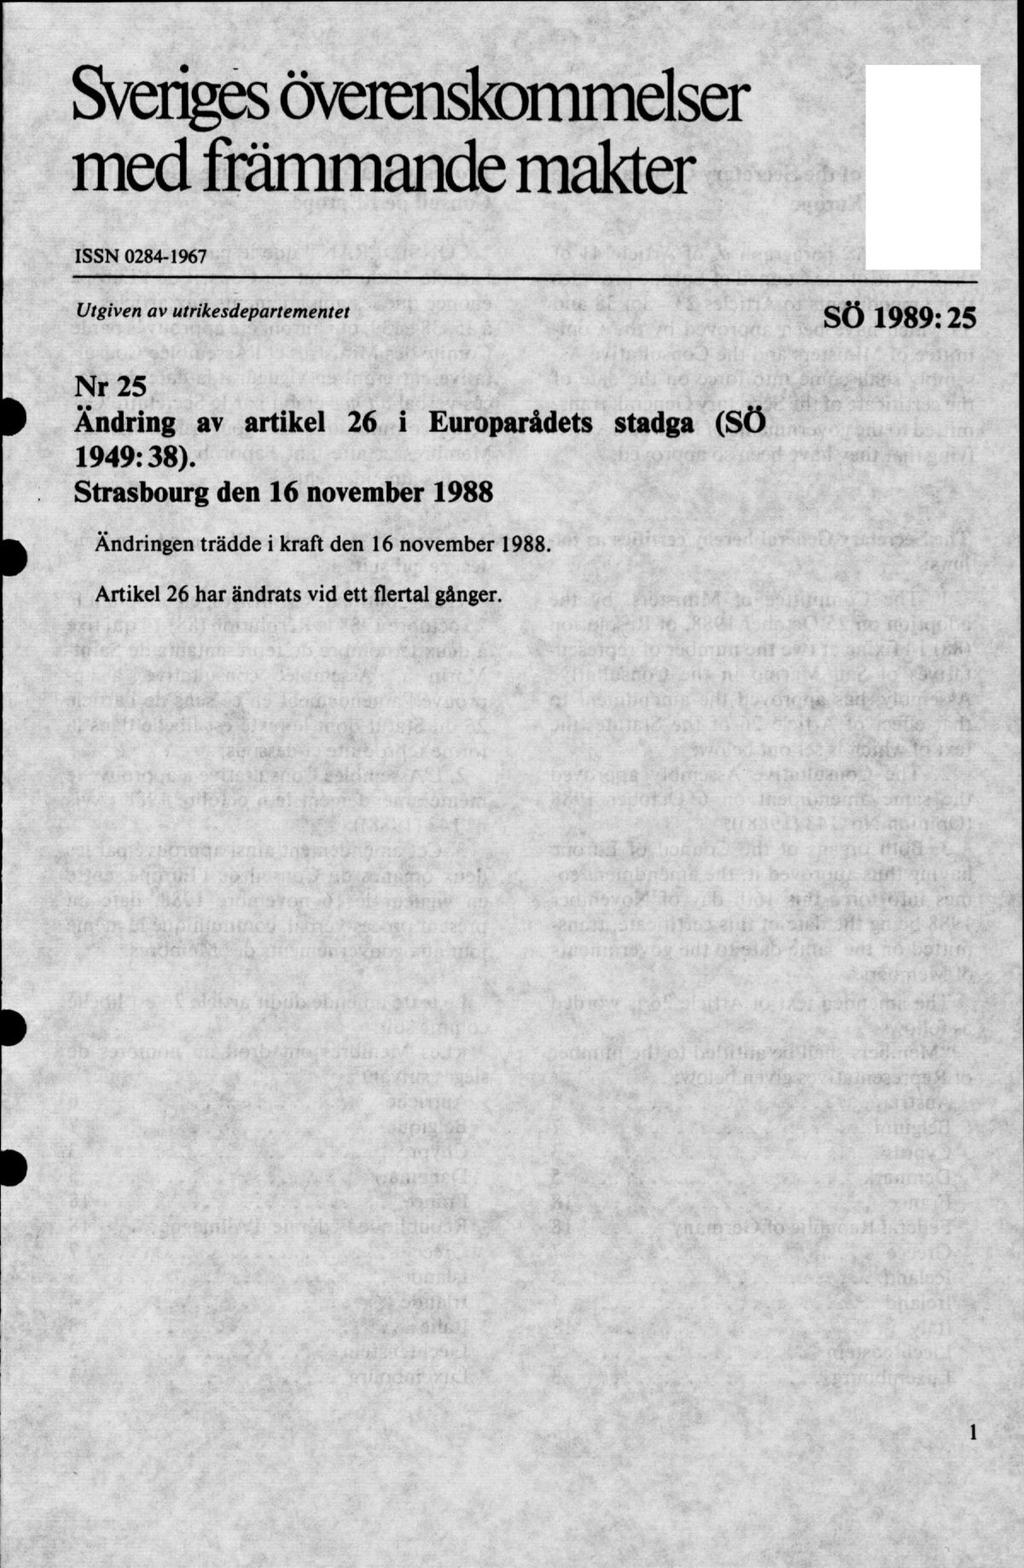 Sveriges överenskommelser med främmande makter ISSN 0284-1967 Utgiven av